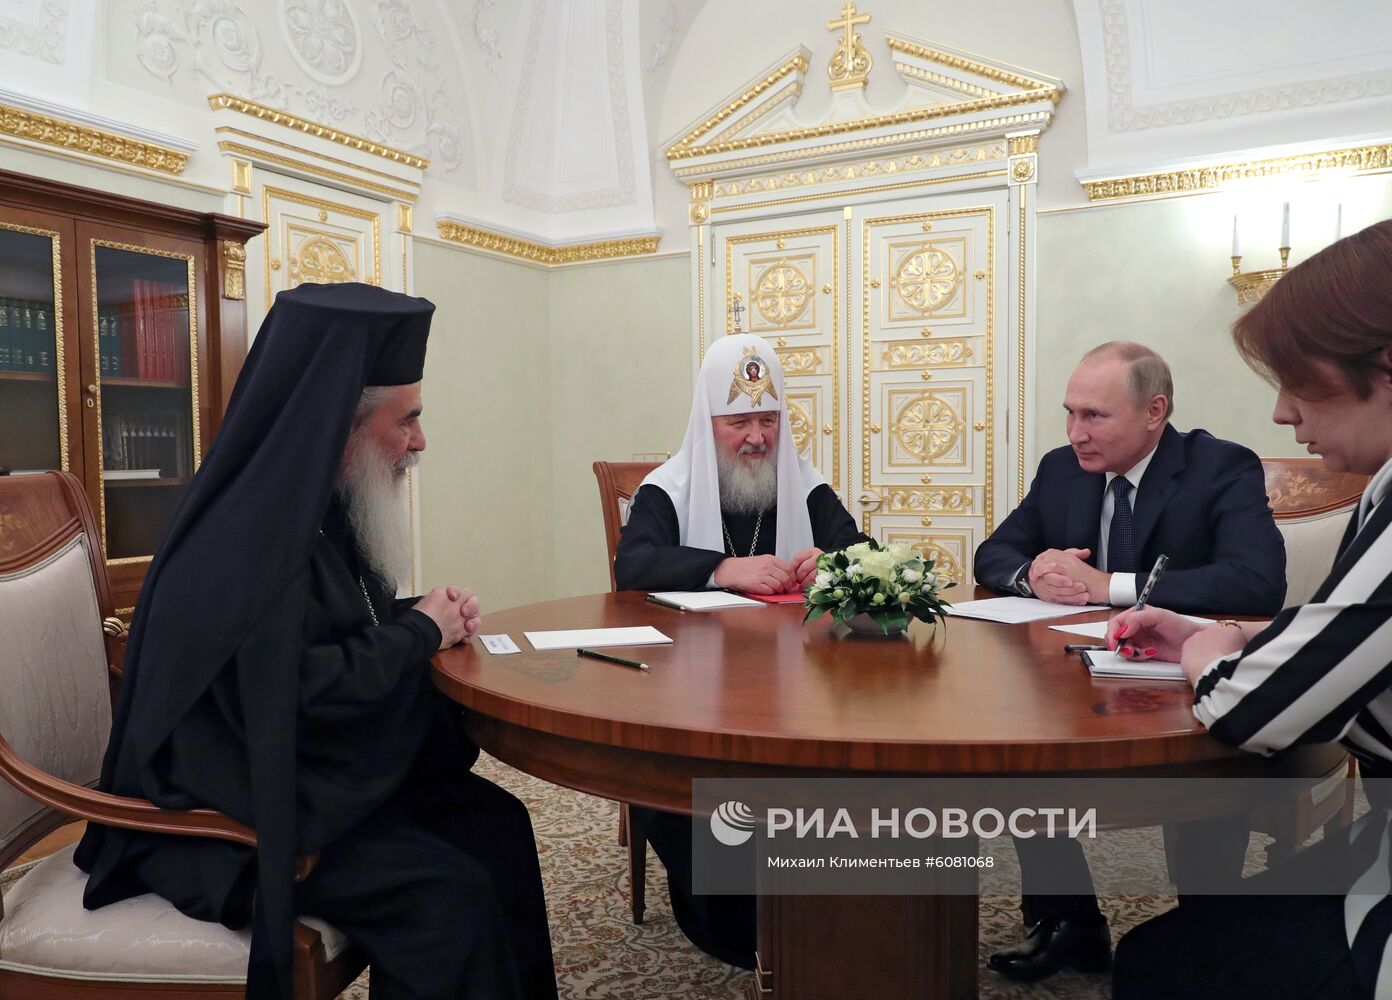 Президент РФ В. Путин встретился с патриархом Московским и всея Руси Кириллом и патриархом Иерусалимским Феофилом III